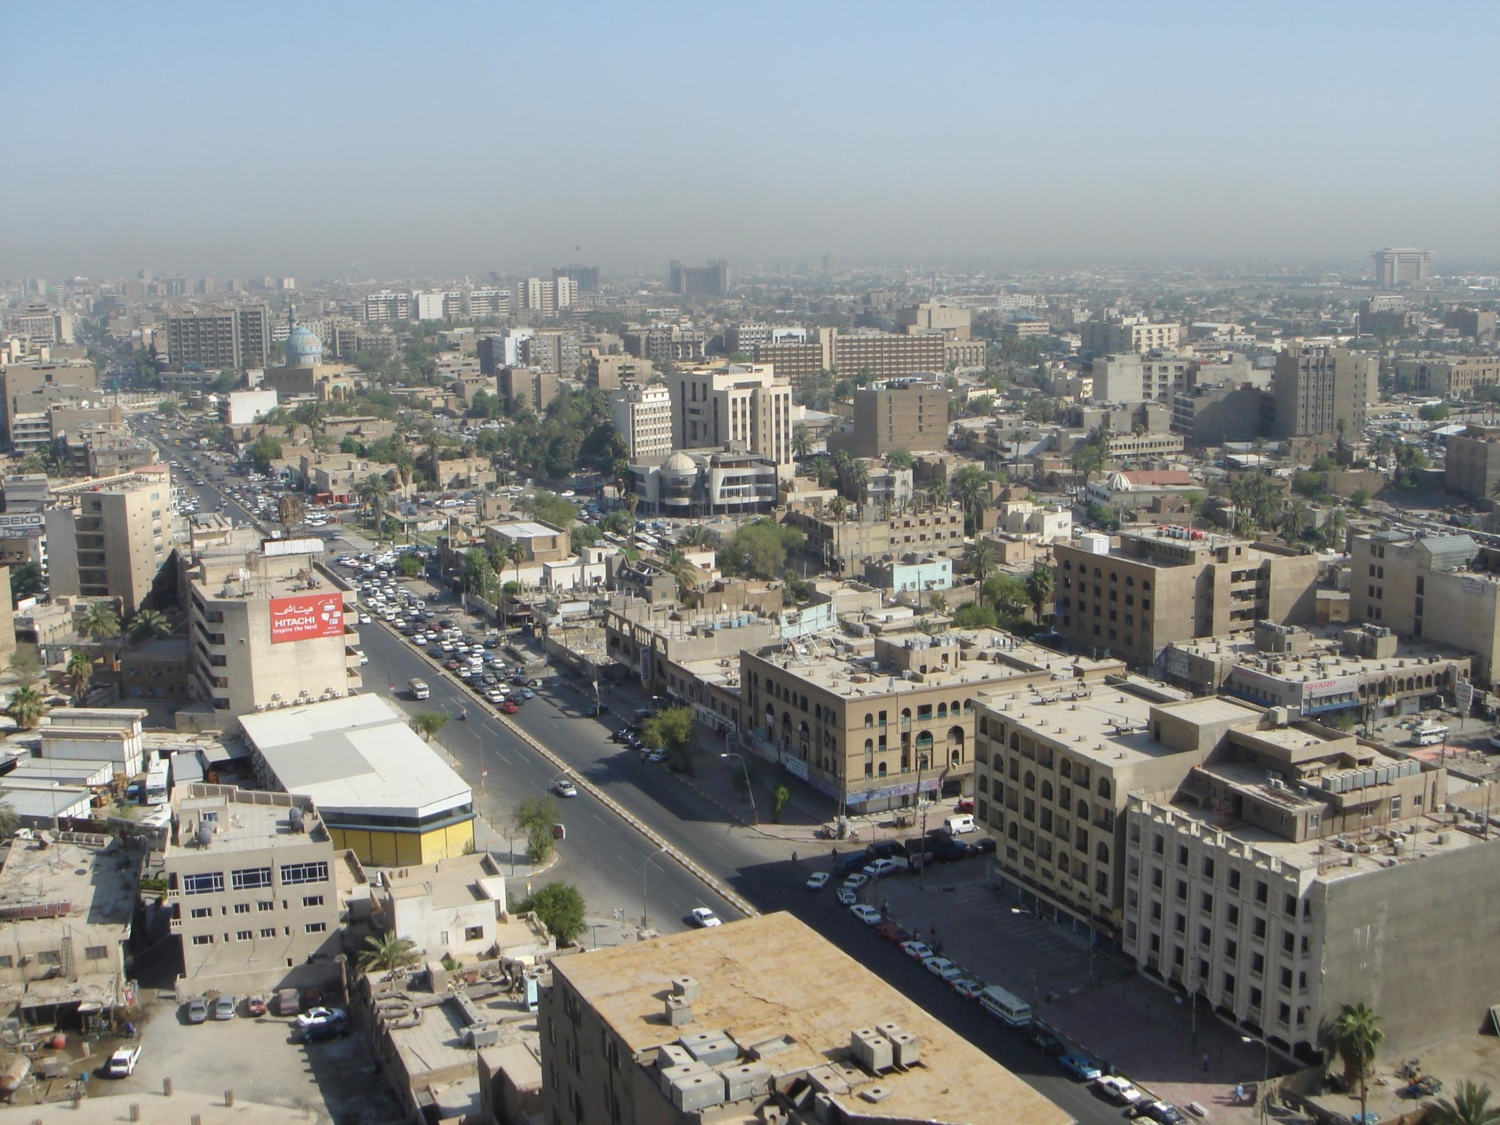  Baghdad - Bird's-eye view of Baghdad